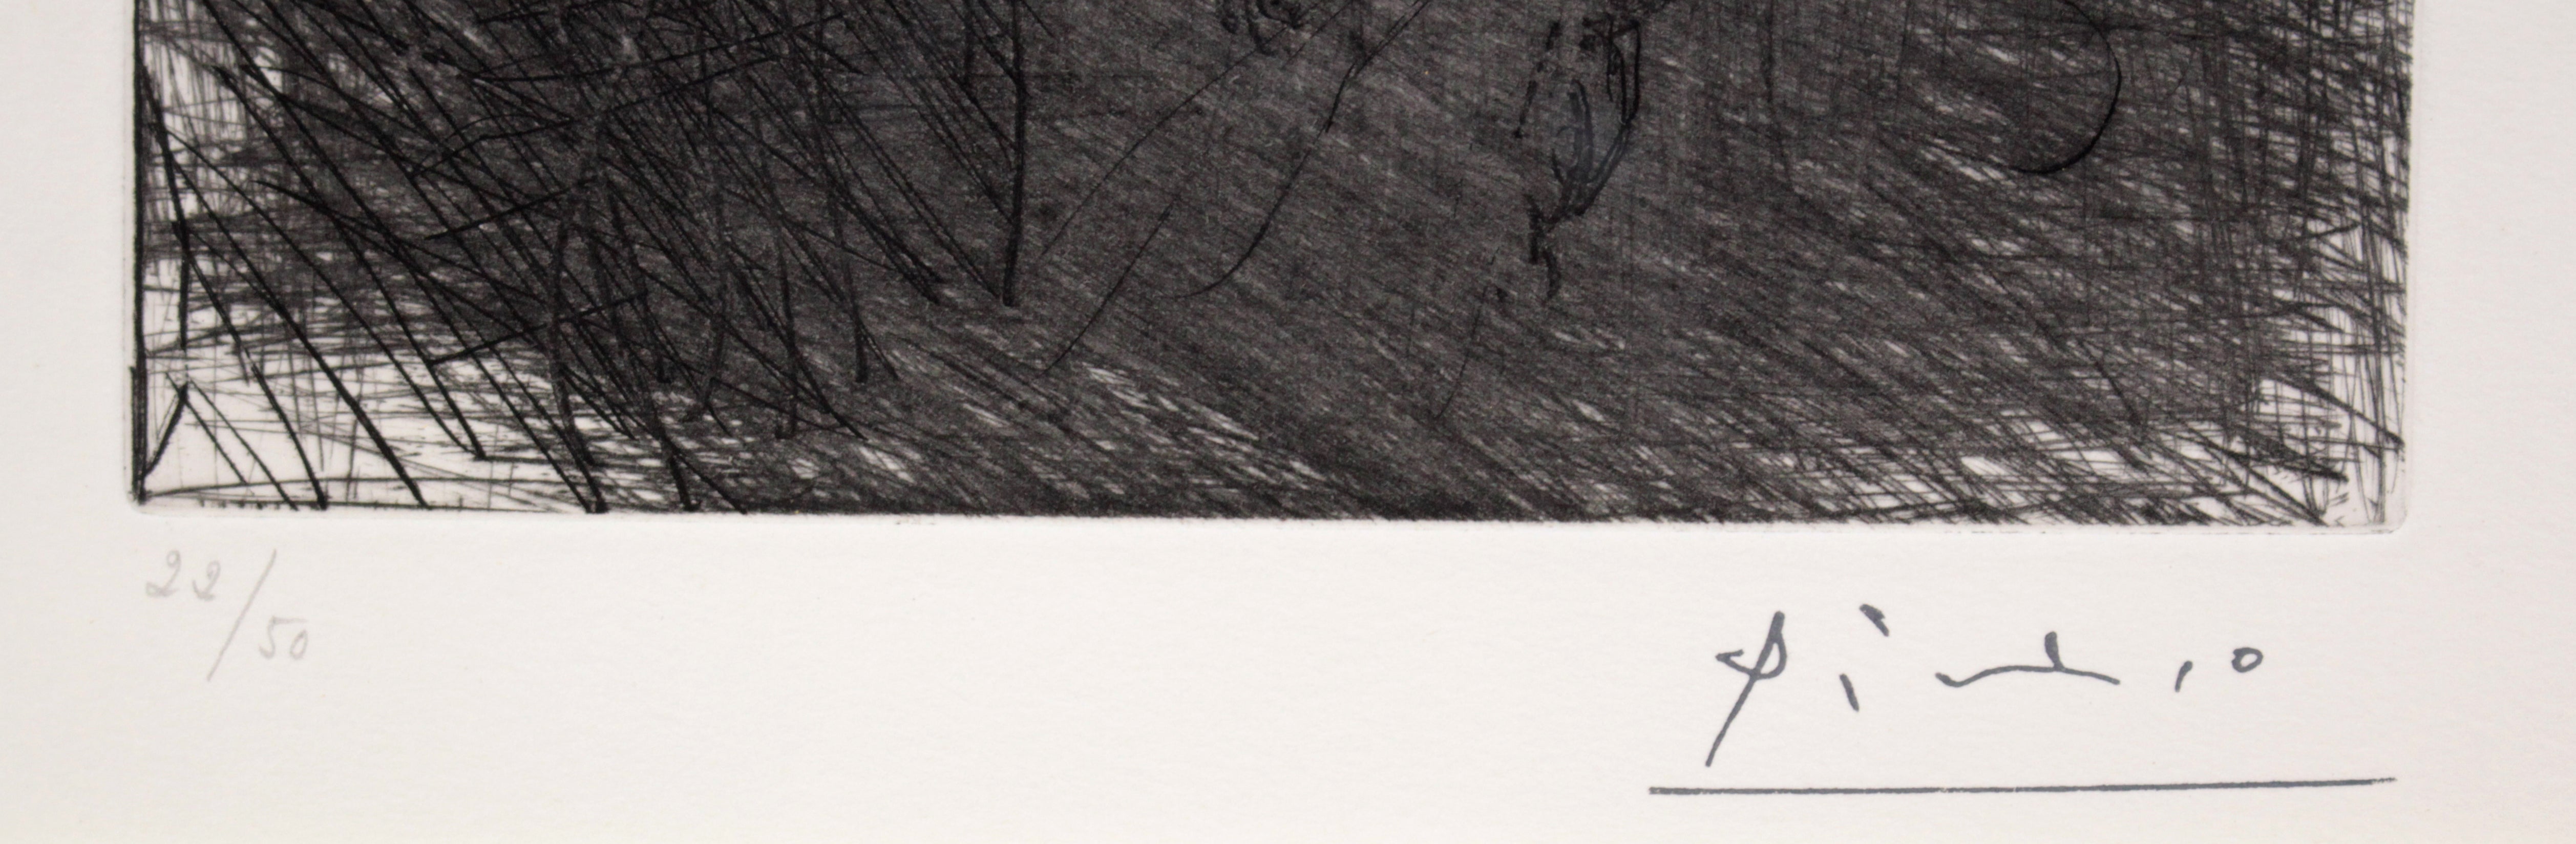 パブロ・ピカソ 『156シリーズ 作品92』 銅版画 - 北海道画廊